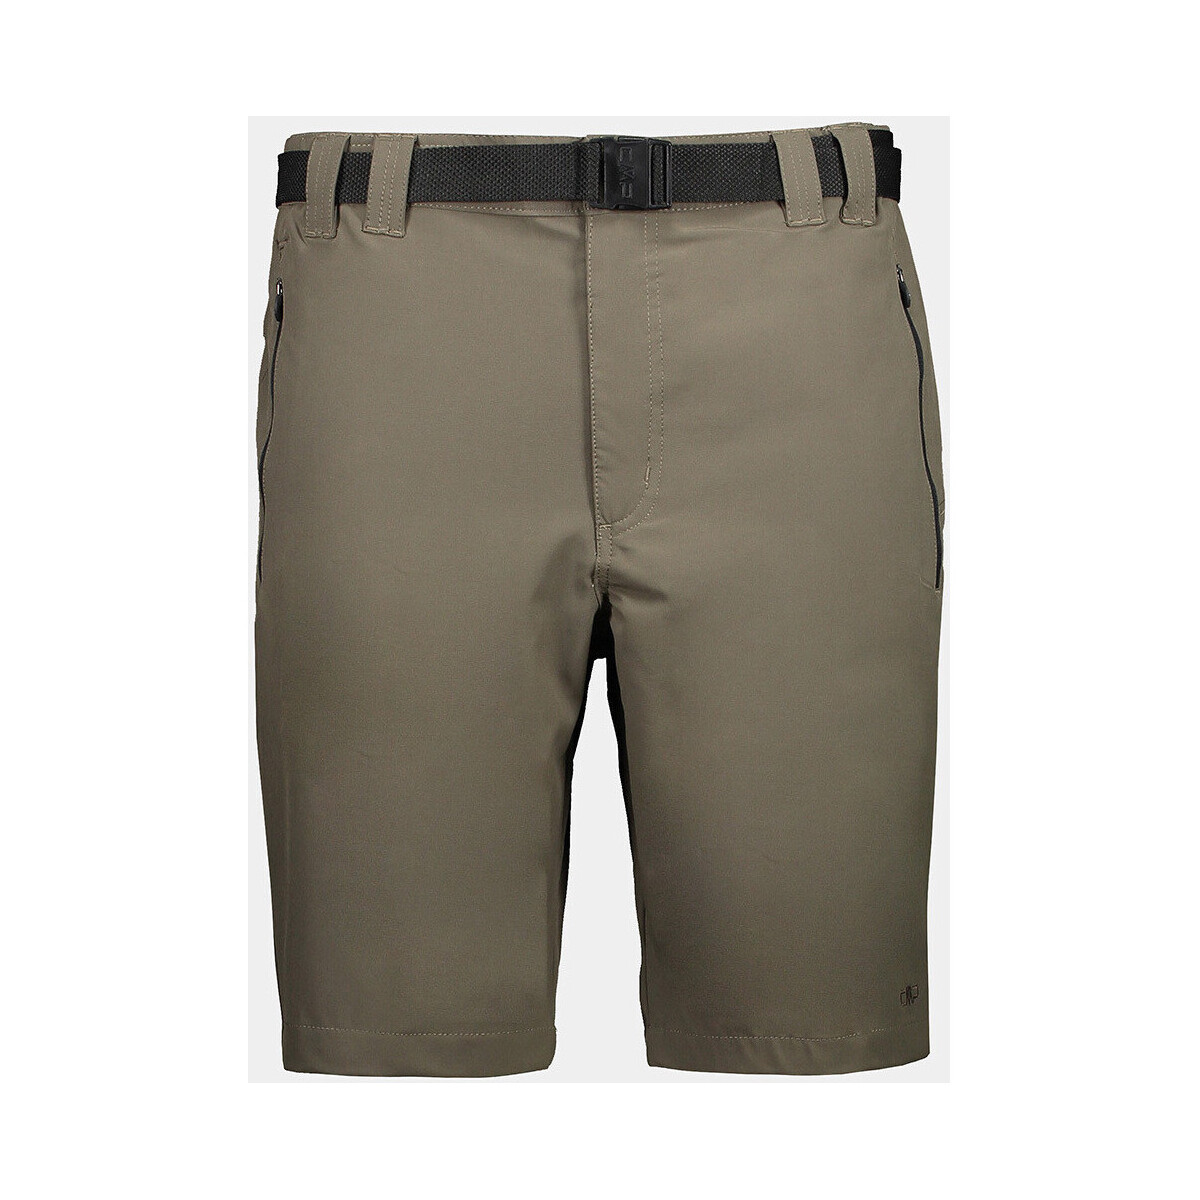 Abbigliamento Uomo Shorts / Bermuda Cmp 3T51847 Altri